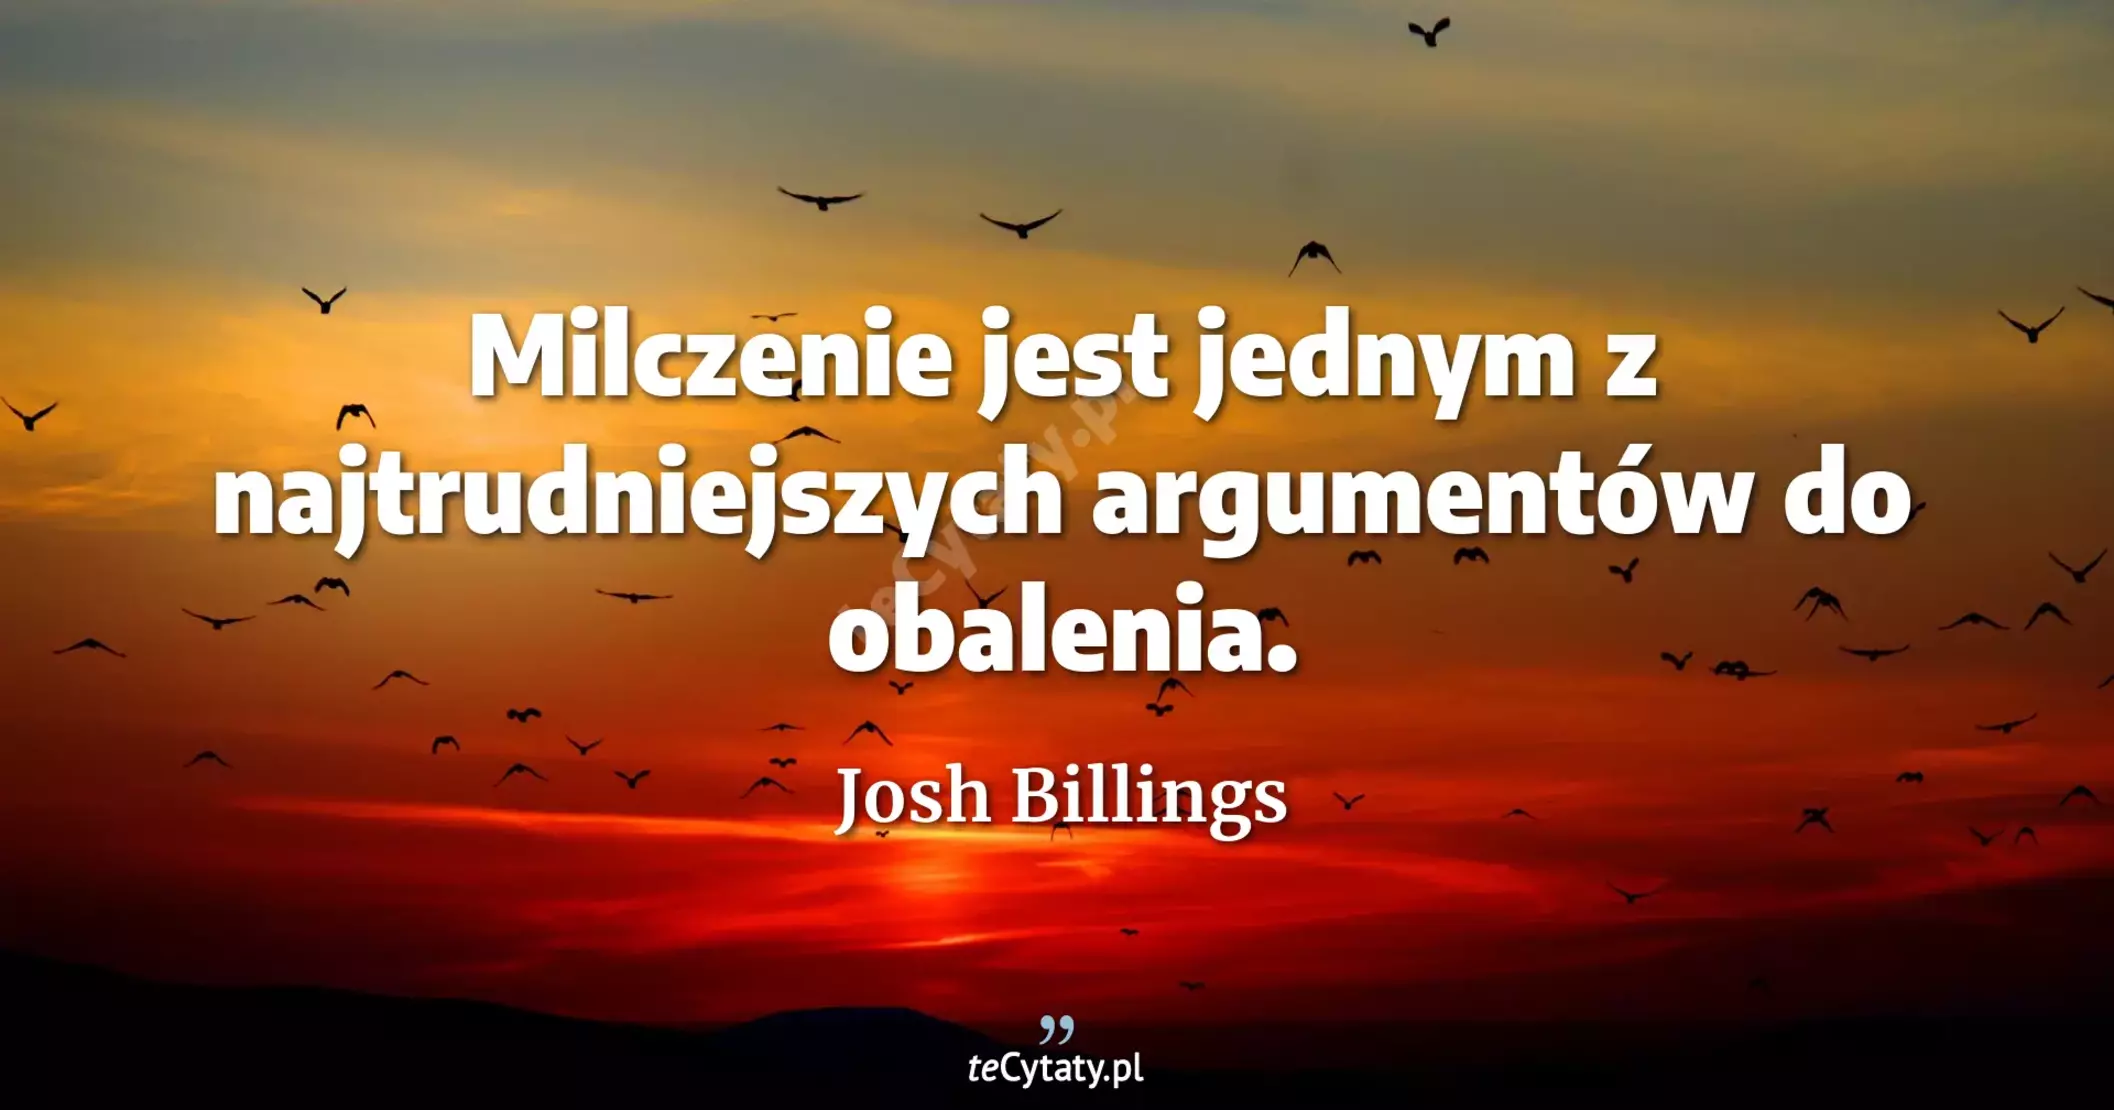 Milczenie jest jednym z najtrudniejszych argumentów do obalenia. - Josh Billings